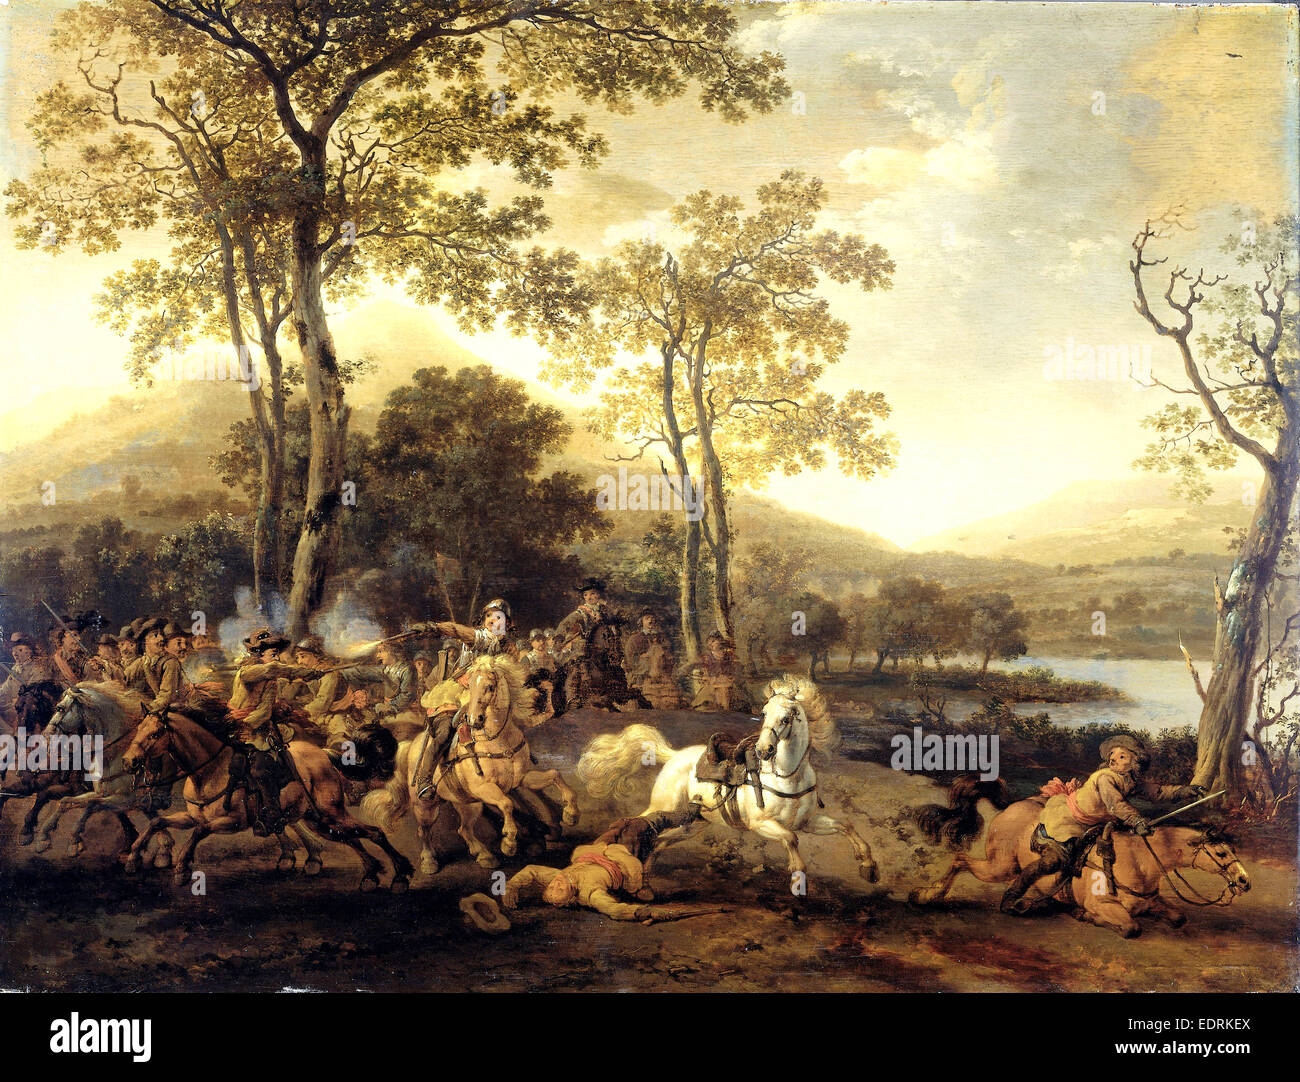 Cavalry Skirmish, Abraham van Calraet, 1660 - 1722 Stock Photo